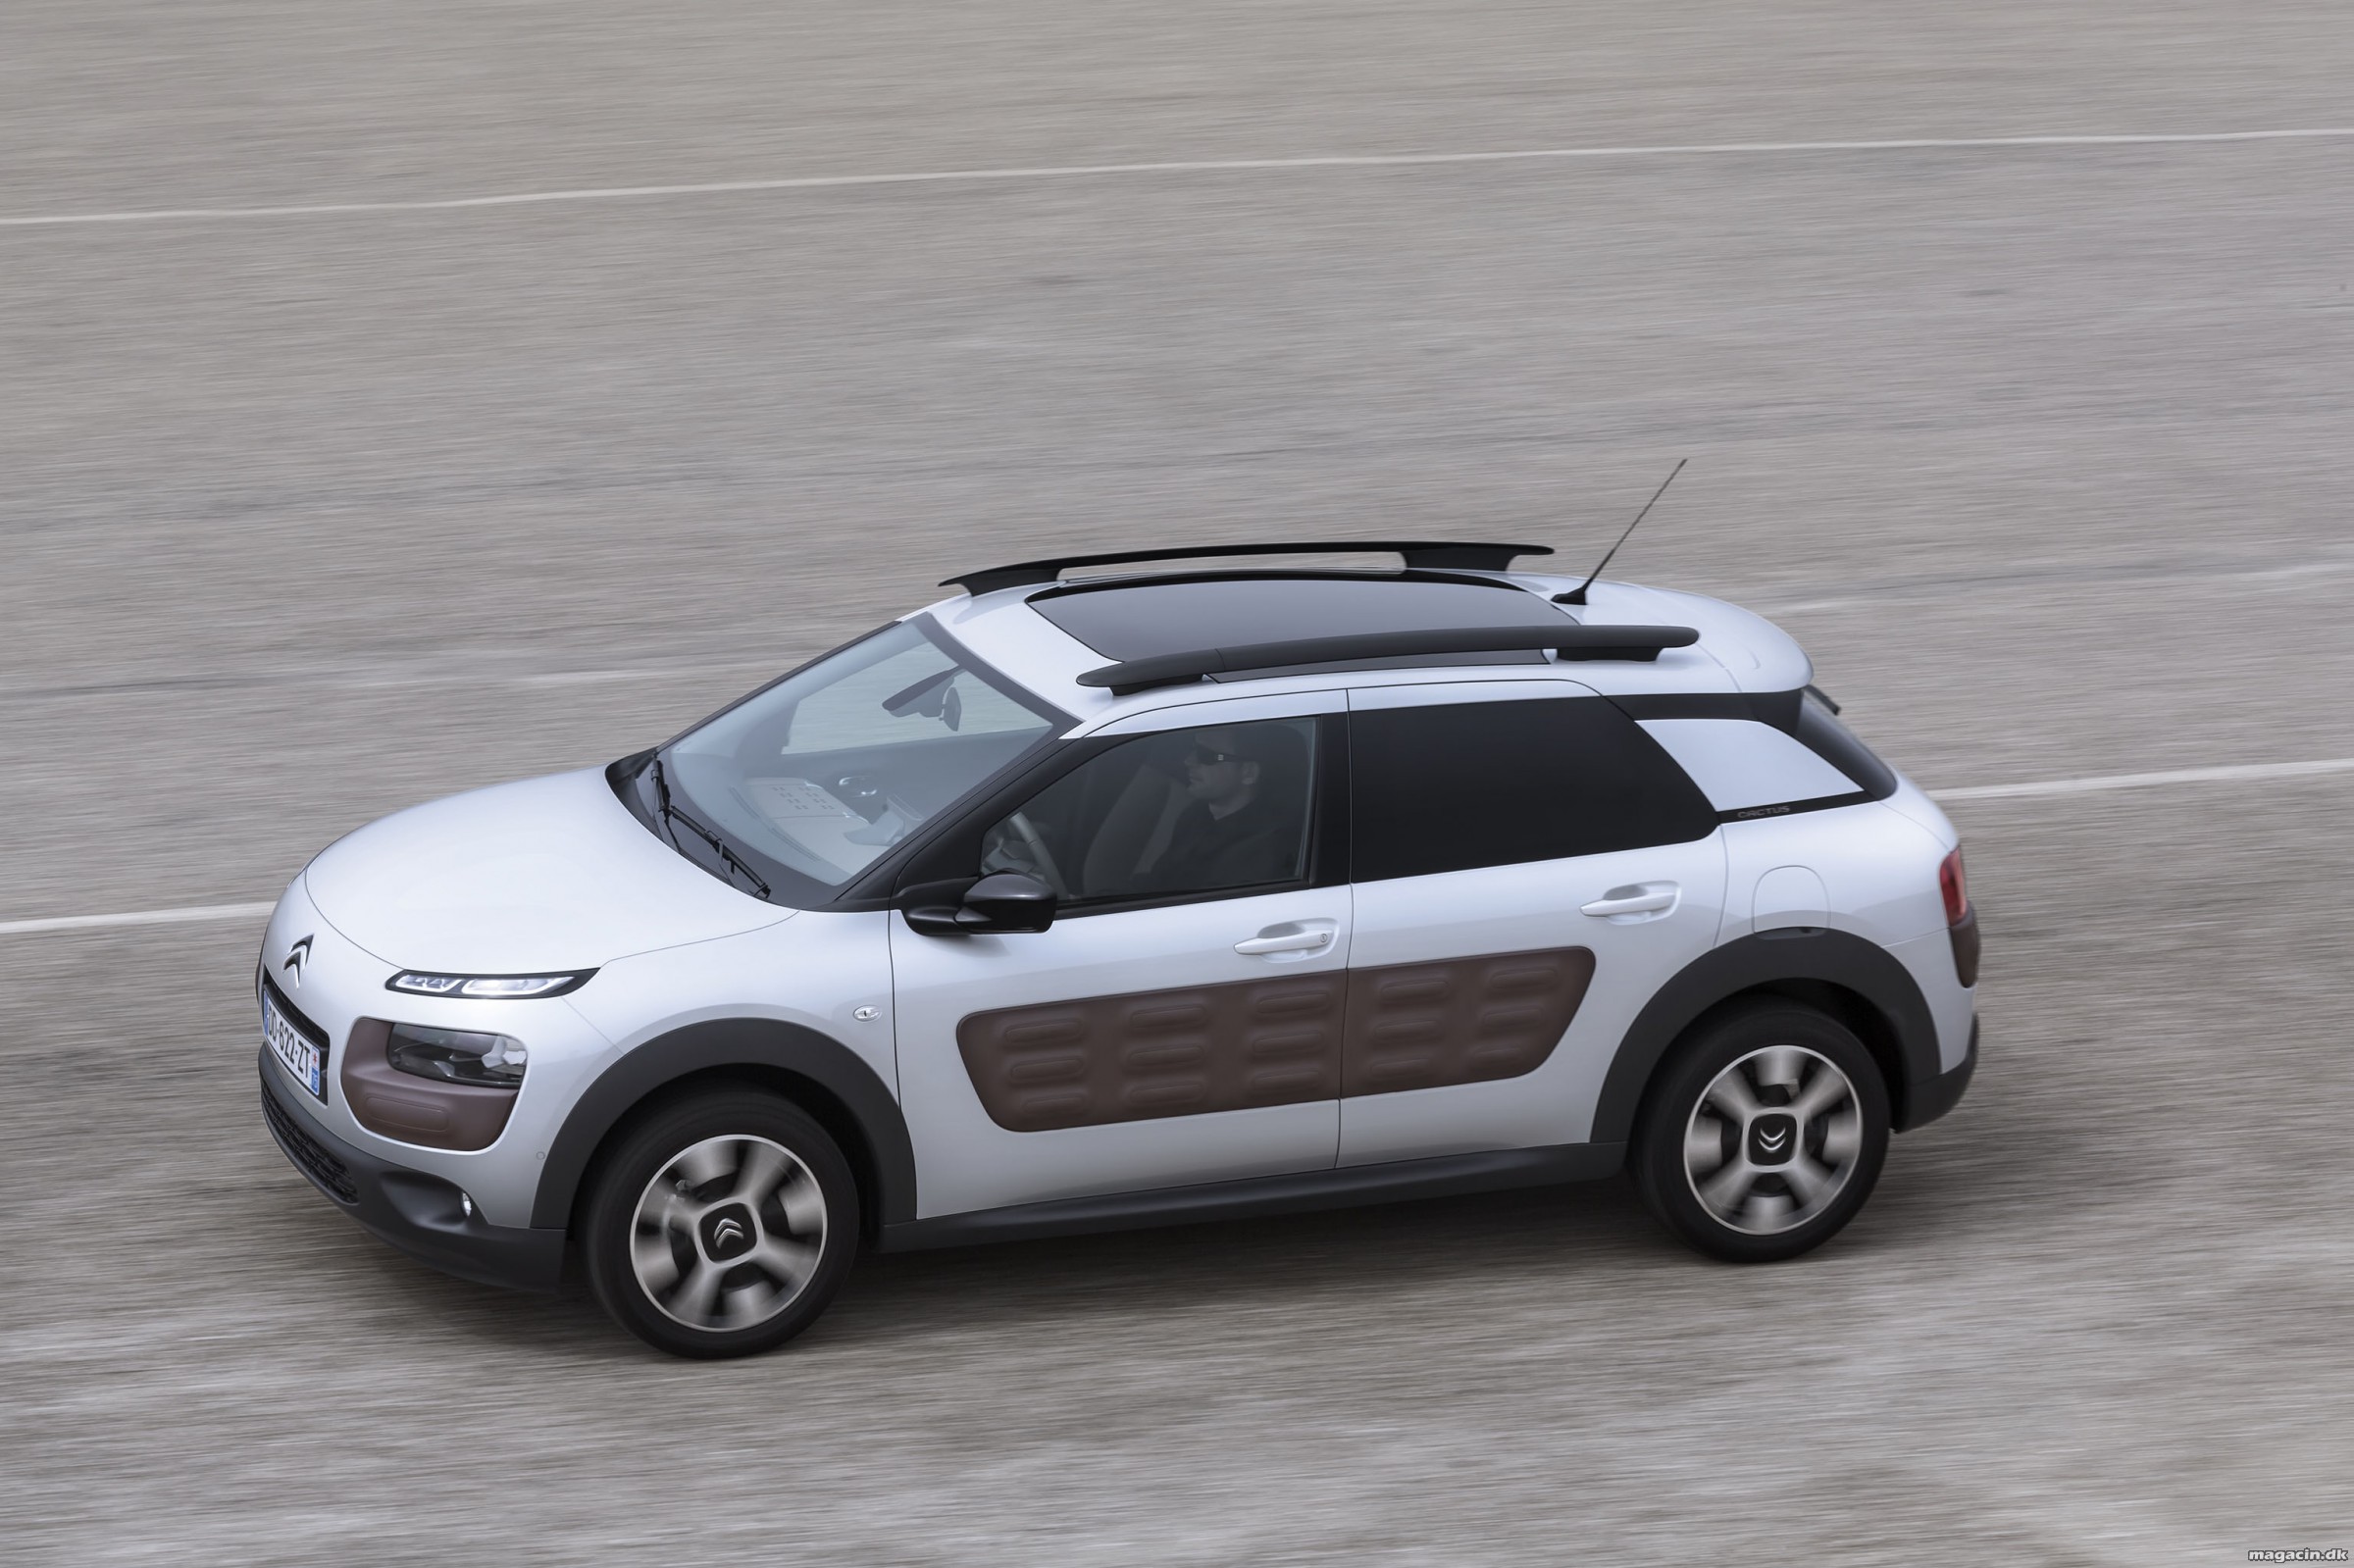 Citroën starter 2015 med speeddating